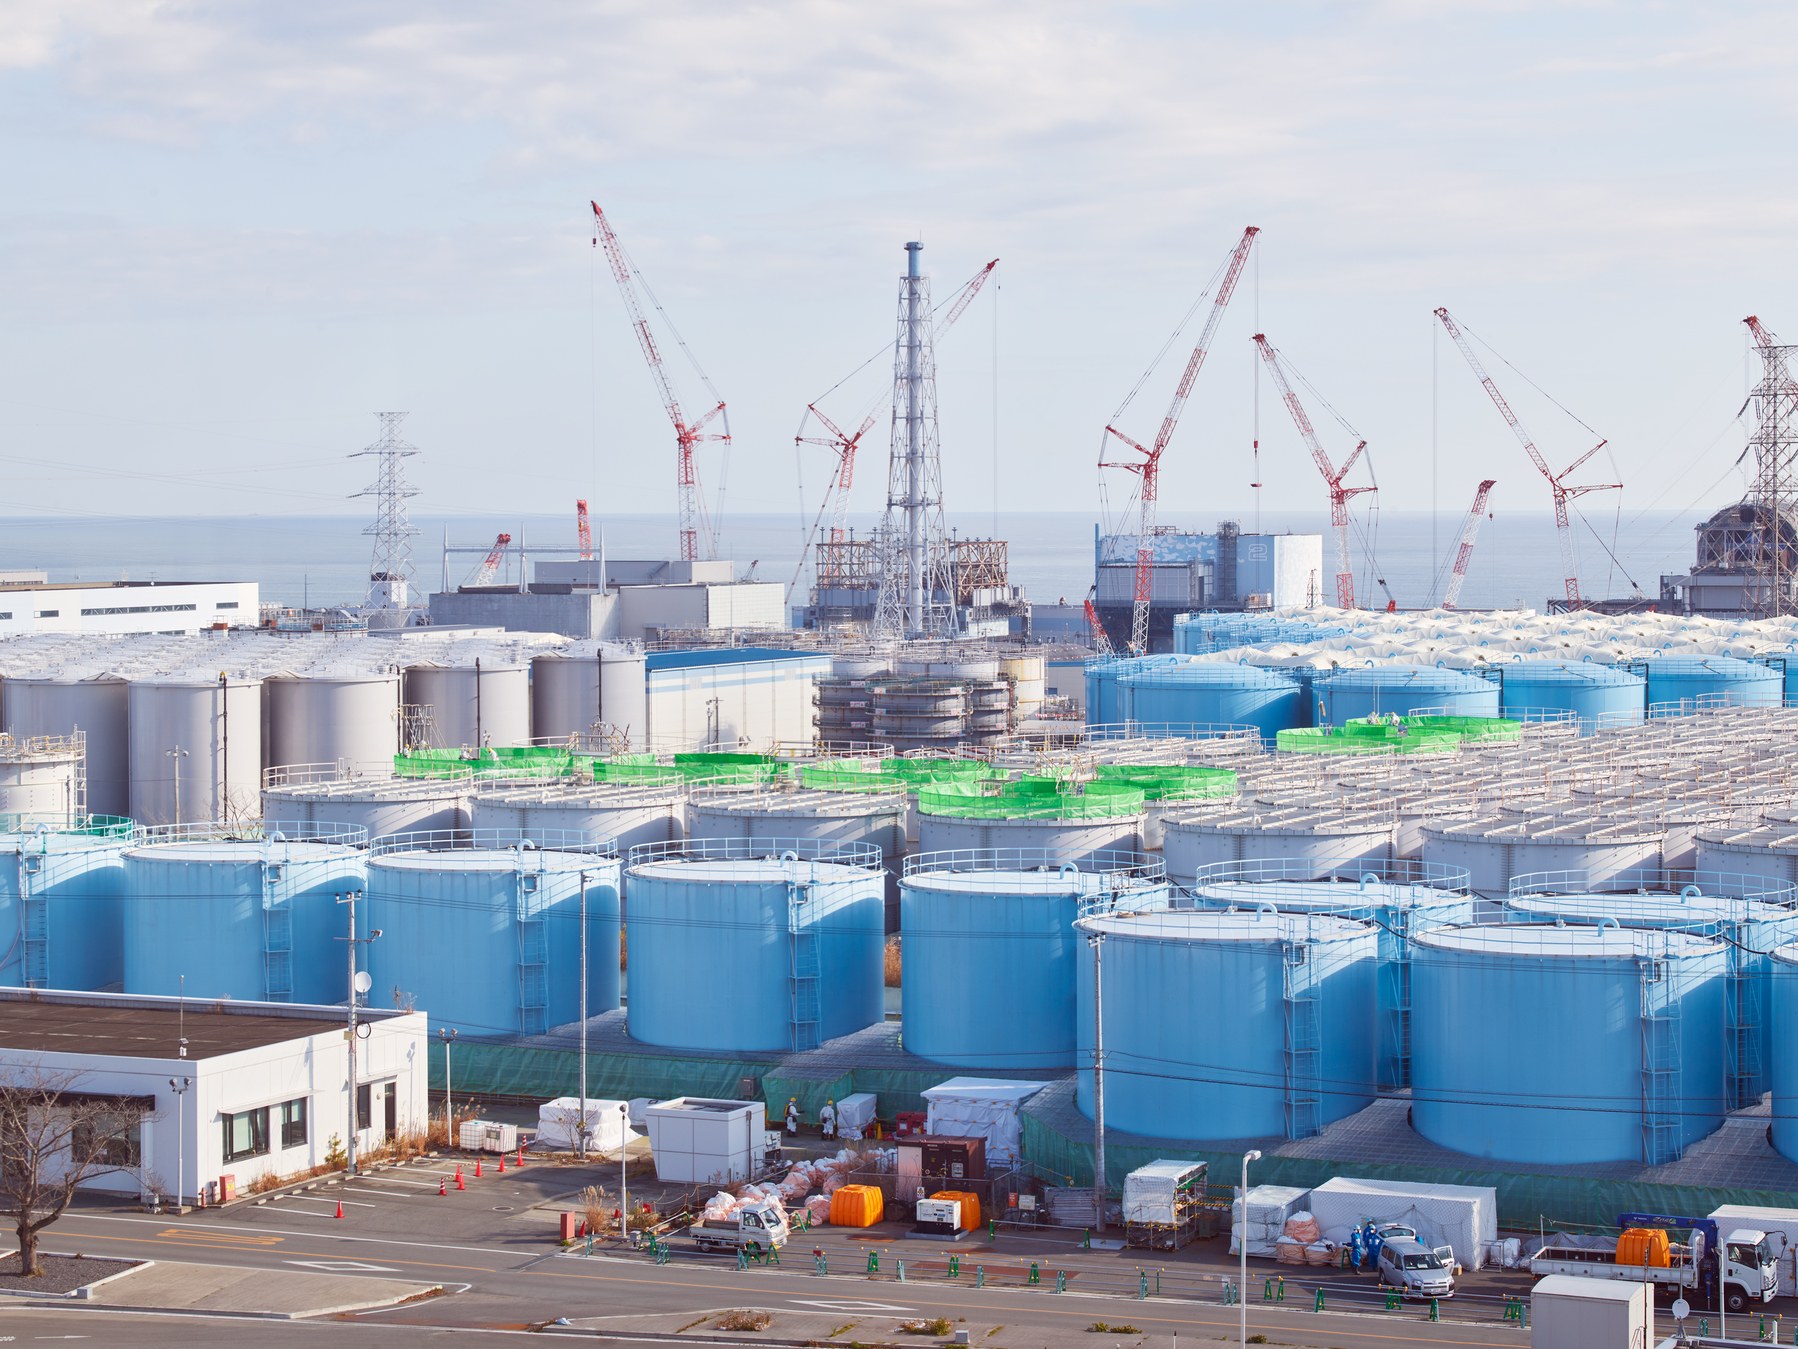 Các thùng chứa nước nhiễm xạ tại nhà máy Fukushima Daiichi. Ảnh: Wired.